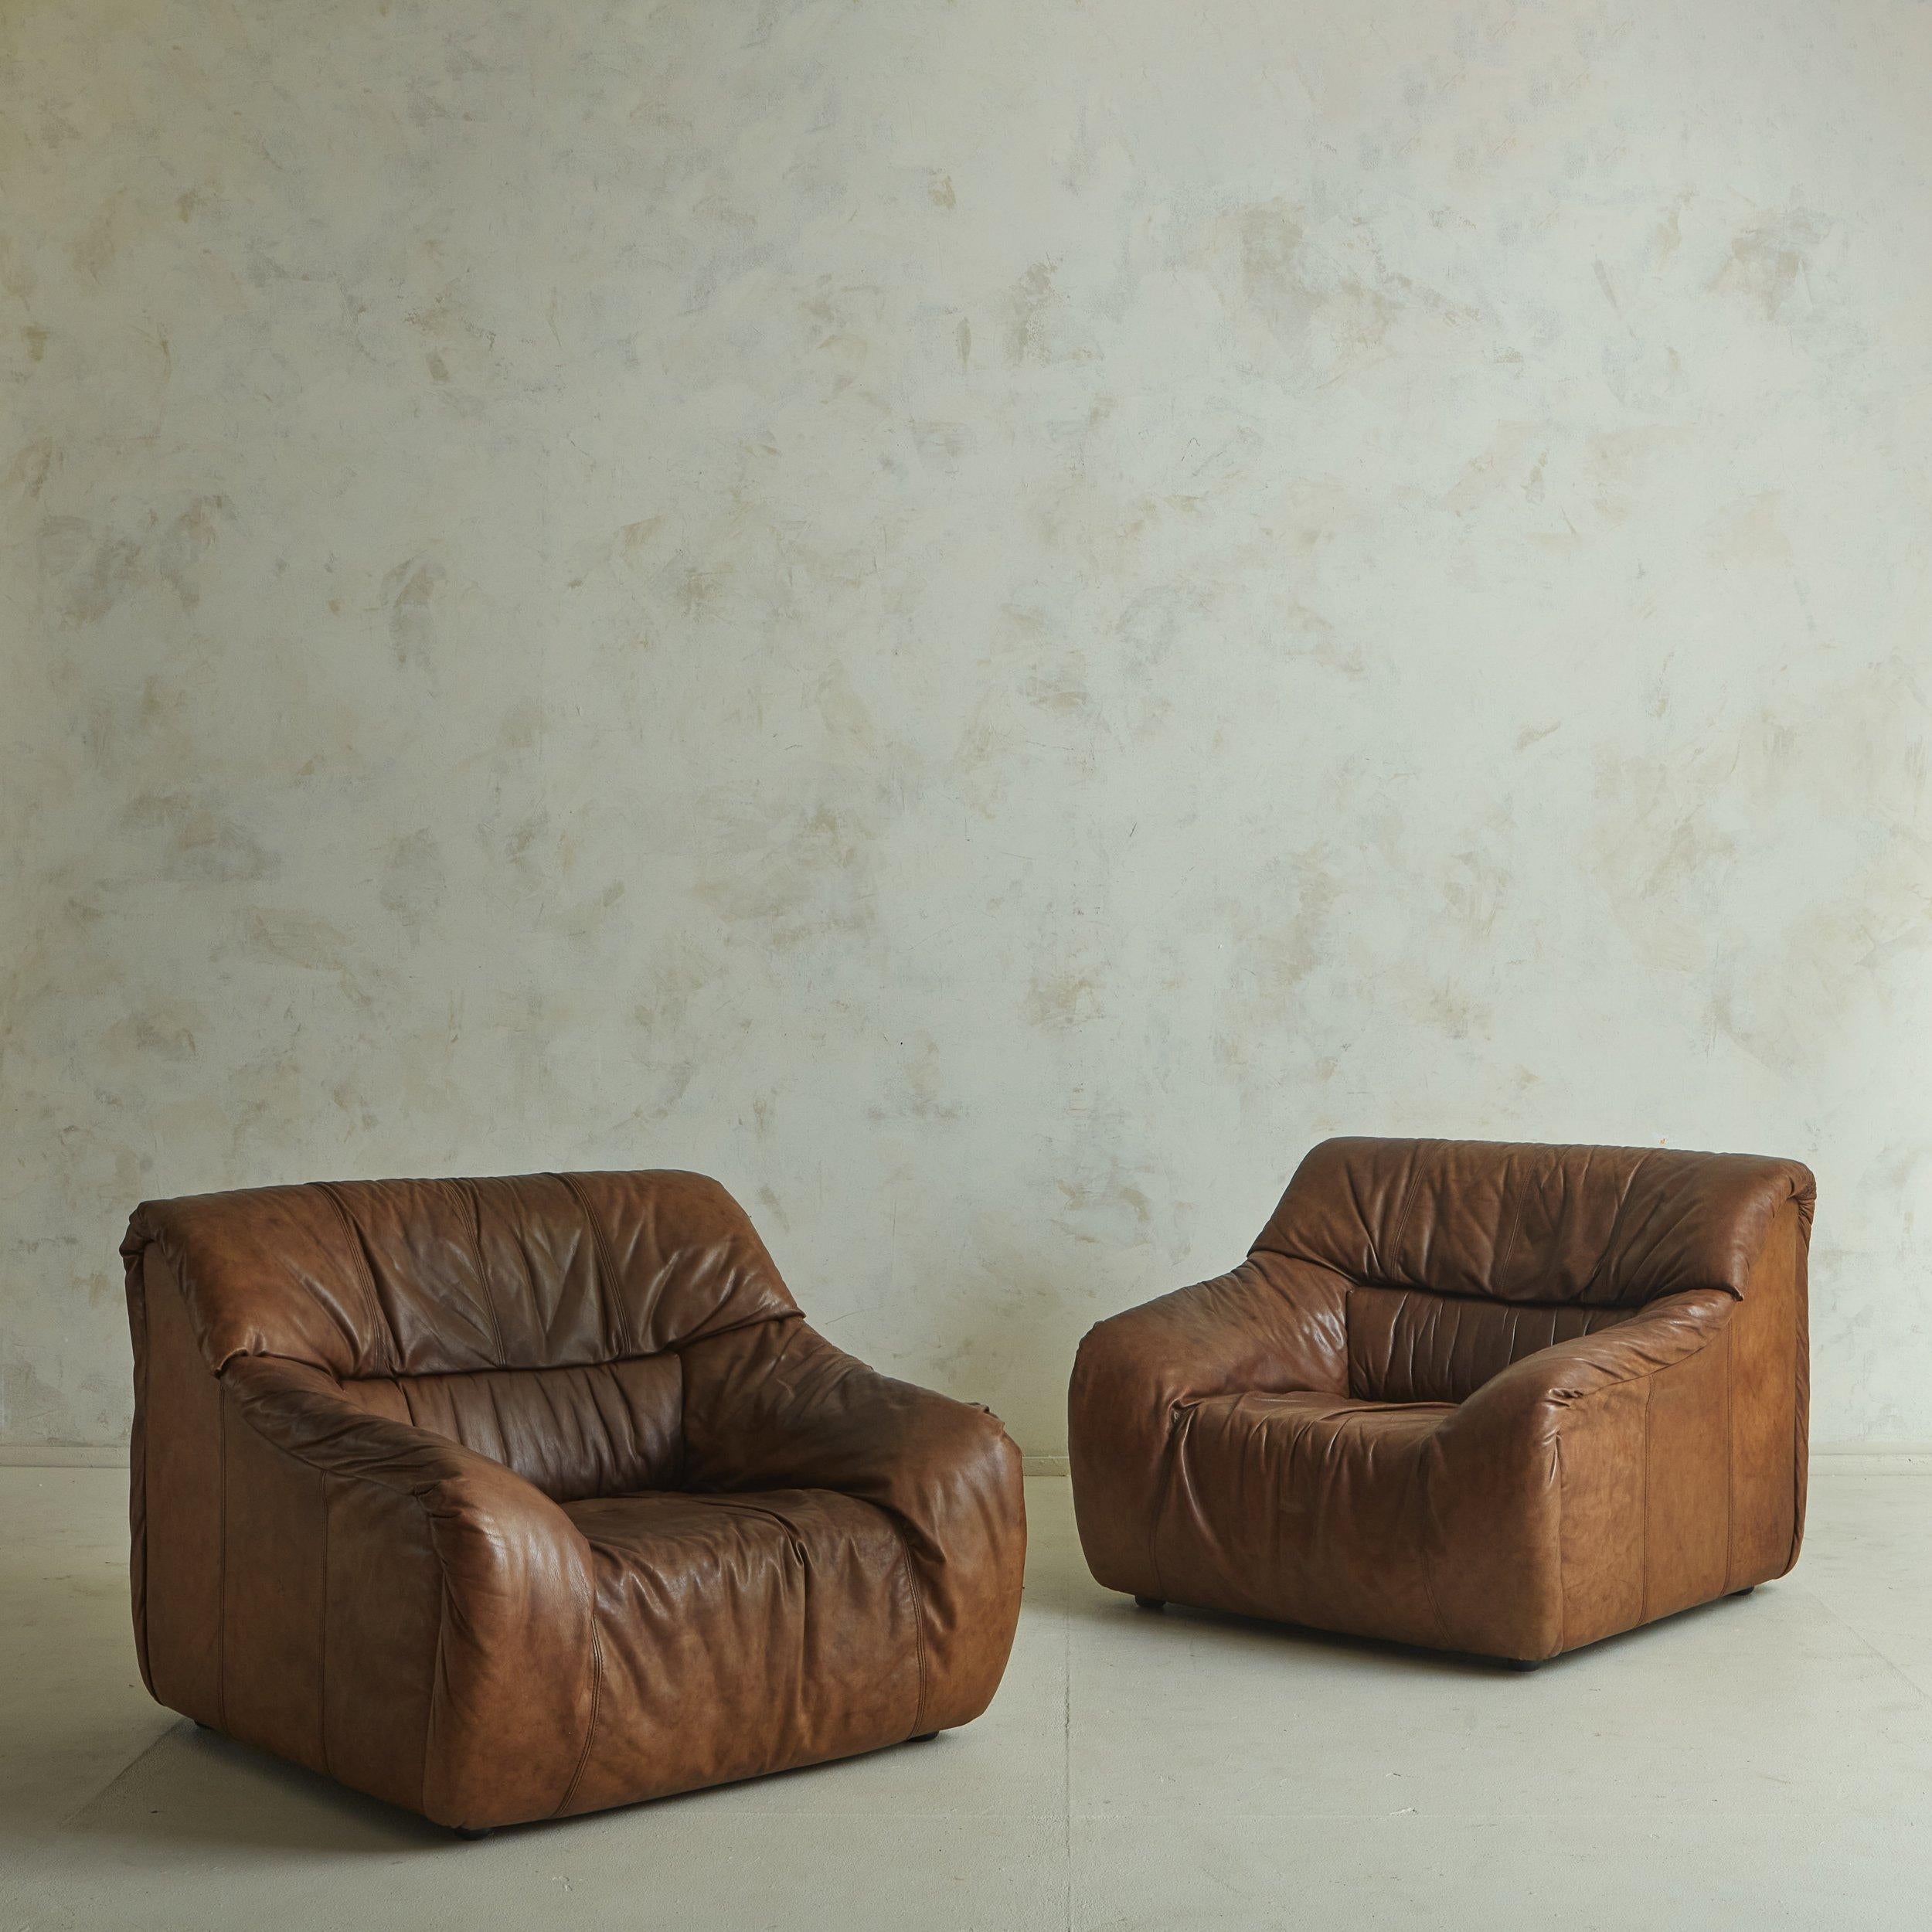 Französischer Sessel aus den 1970er Jahren im Stil von De Sede. Dieser majestätische Stuhl hat einen Blockrahmen mit geschwungenen Armlehnen und steht auf runden Acrylfüßen tief am Boden. Die Originalpolsterung aus schokoladenfarbenem Rüschenleder